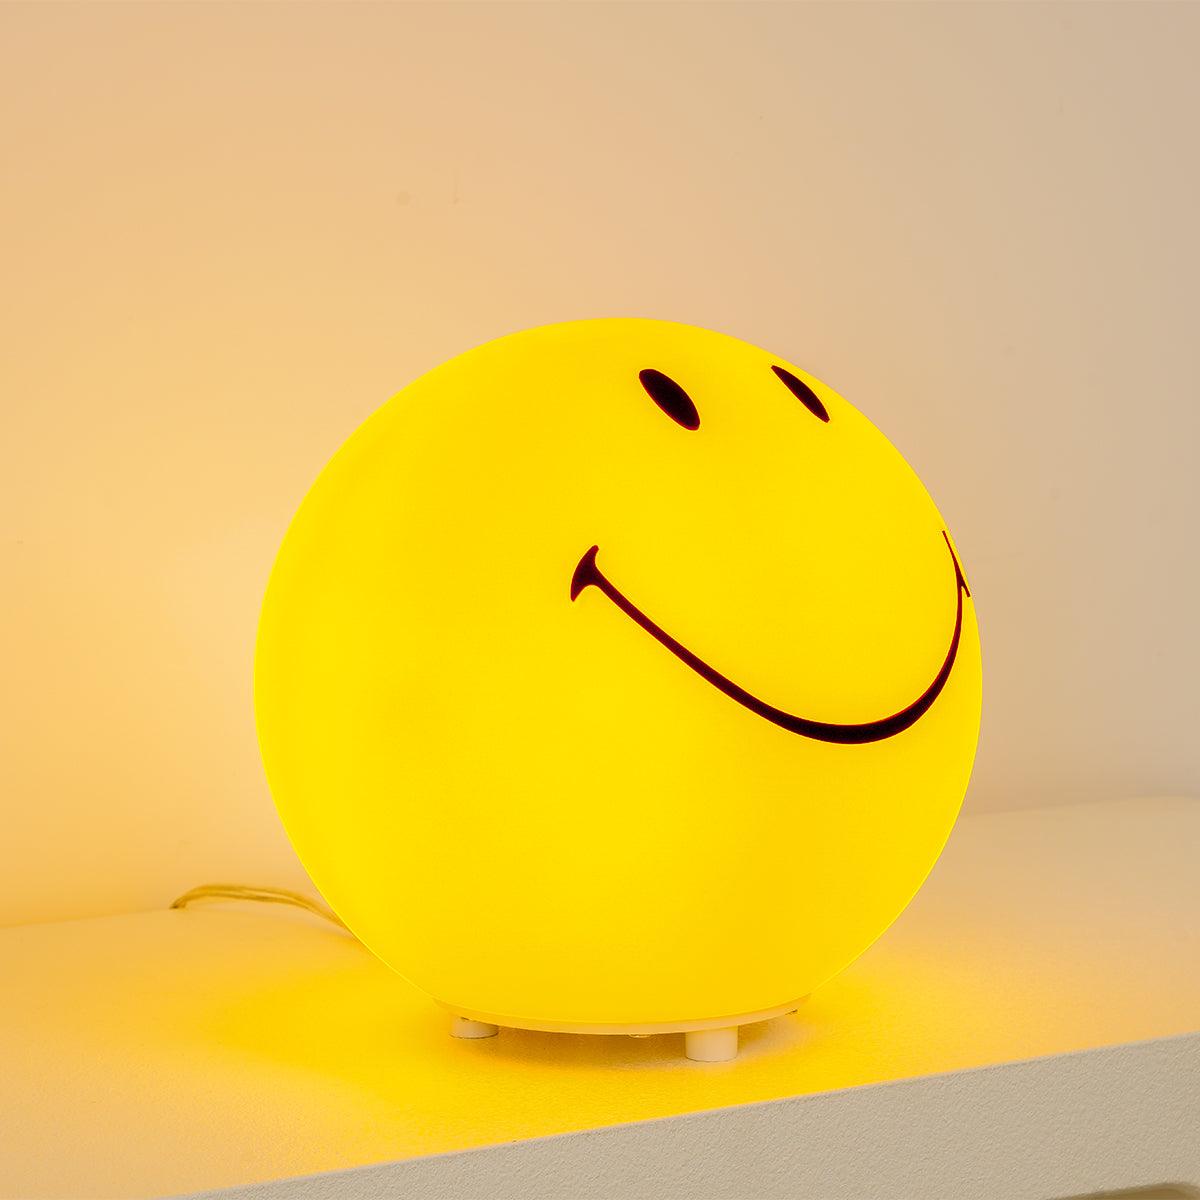 Smiling wiederaufladbare Tischlampe mit eingebautem Akku